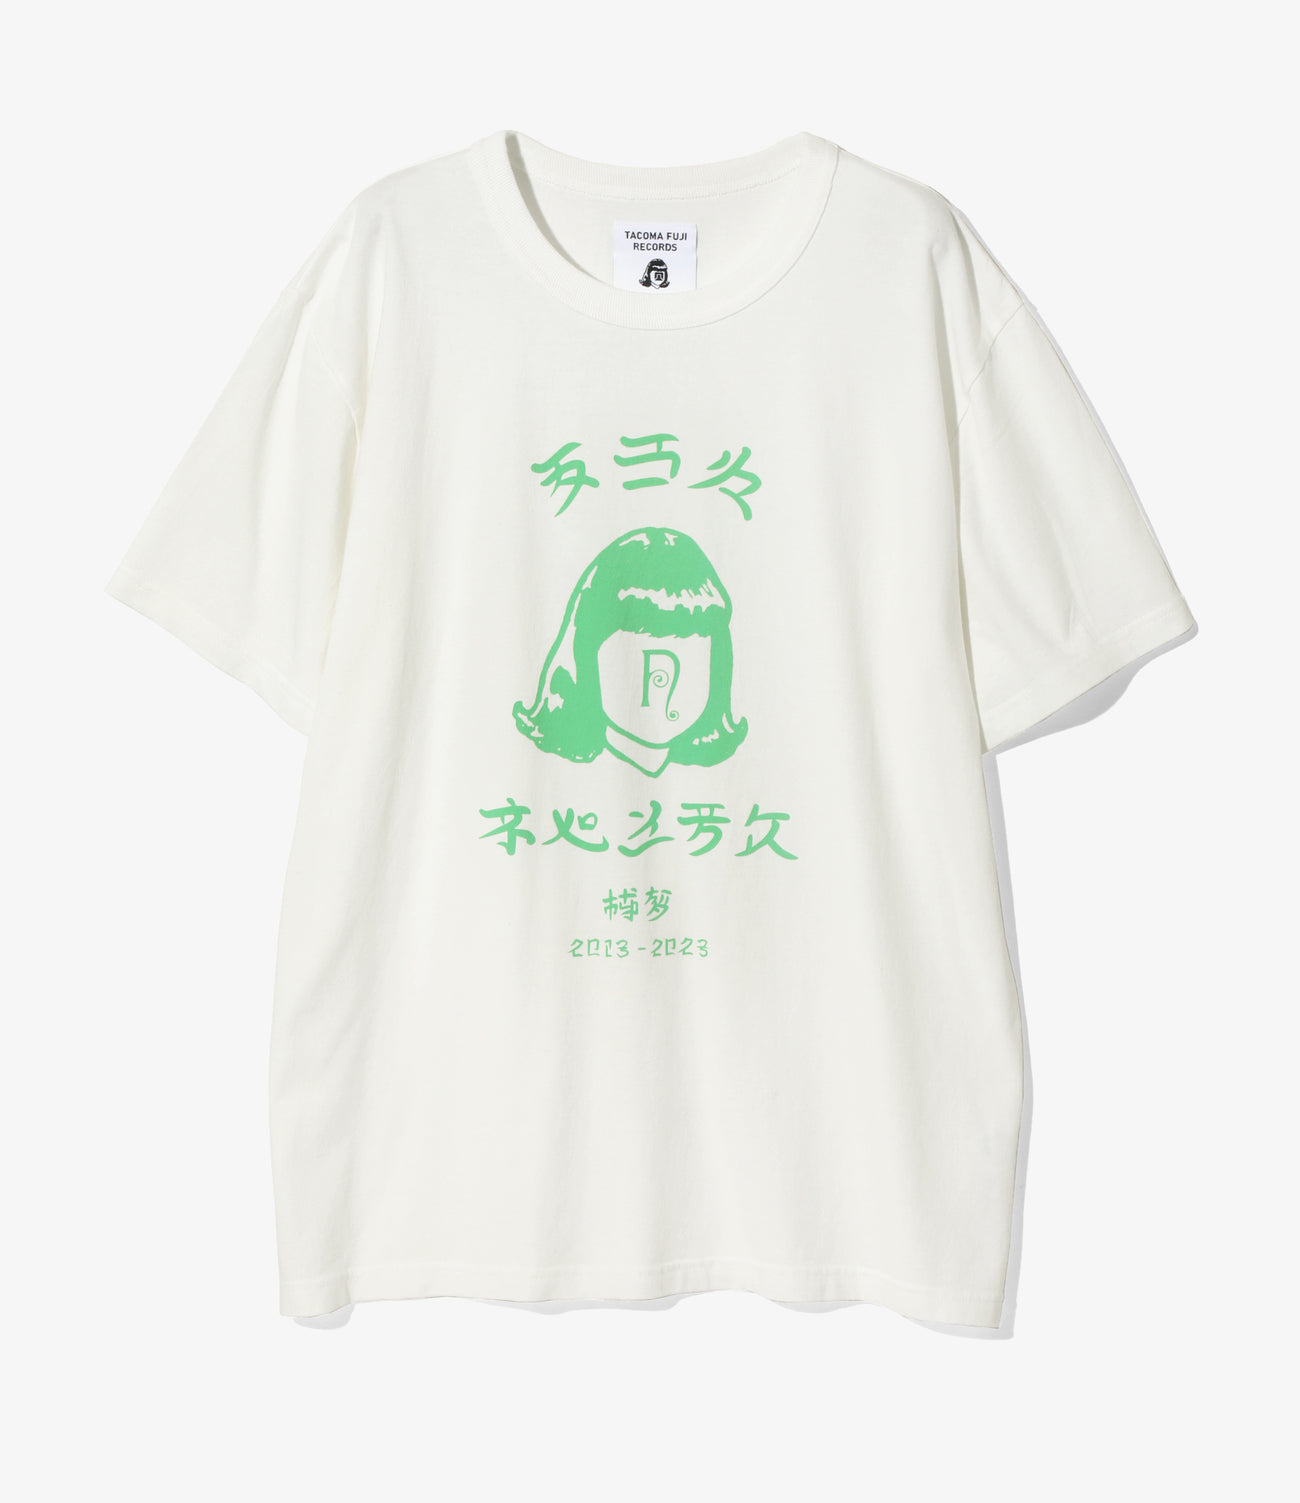 TACOMA FUJI RECORDS タコマフジレコード Tシャツ 白 - トップス